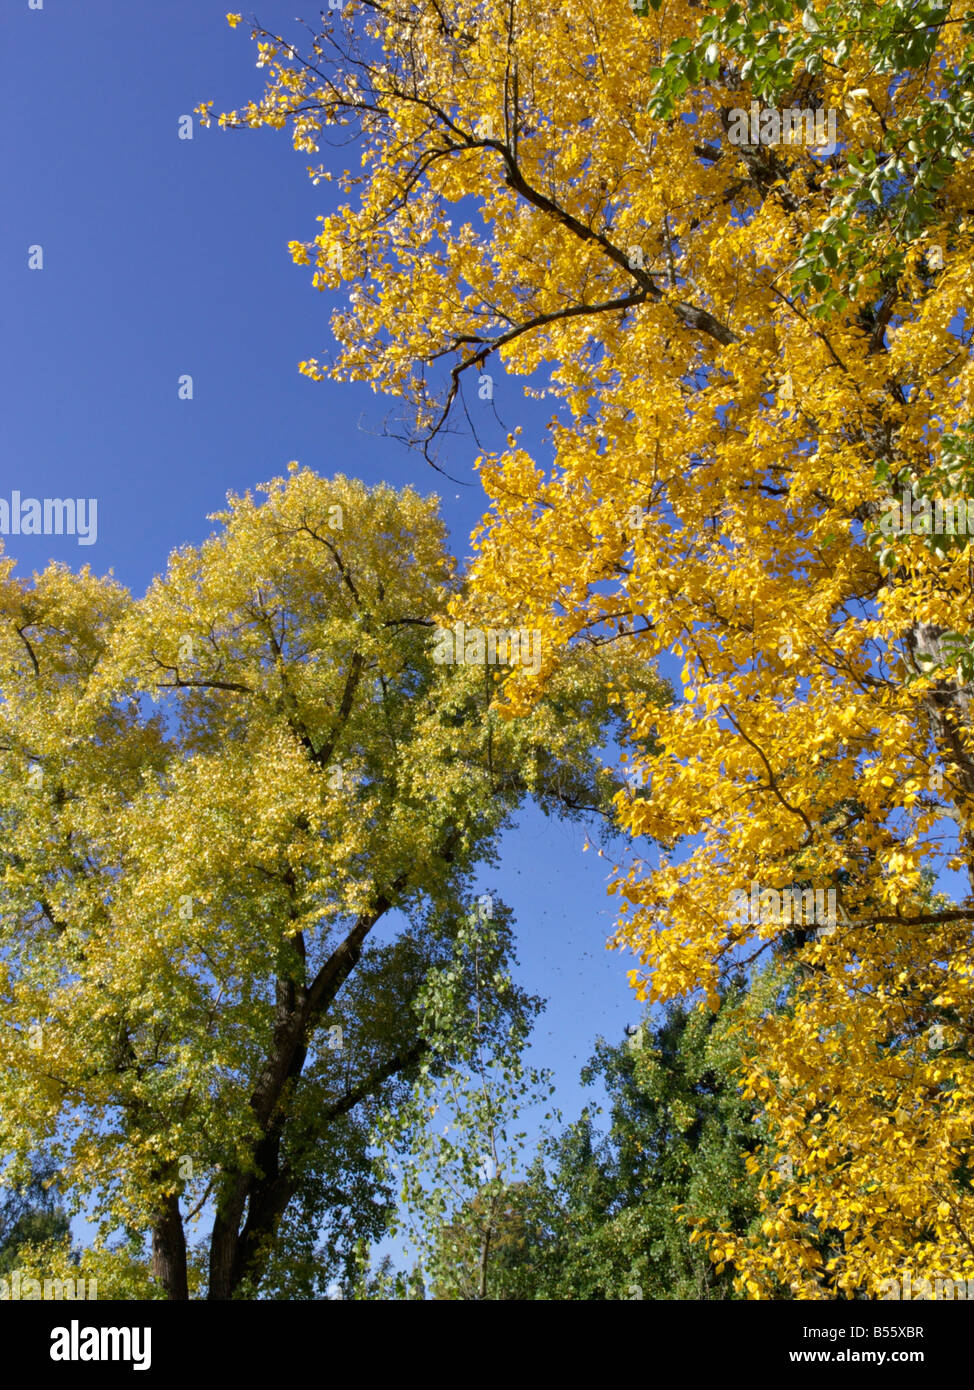 Berlin Pappel (populus x berolinensis) und kanadische Pappel (populus x canadensis) Stockfoto